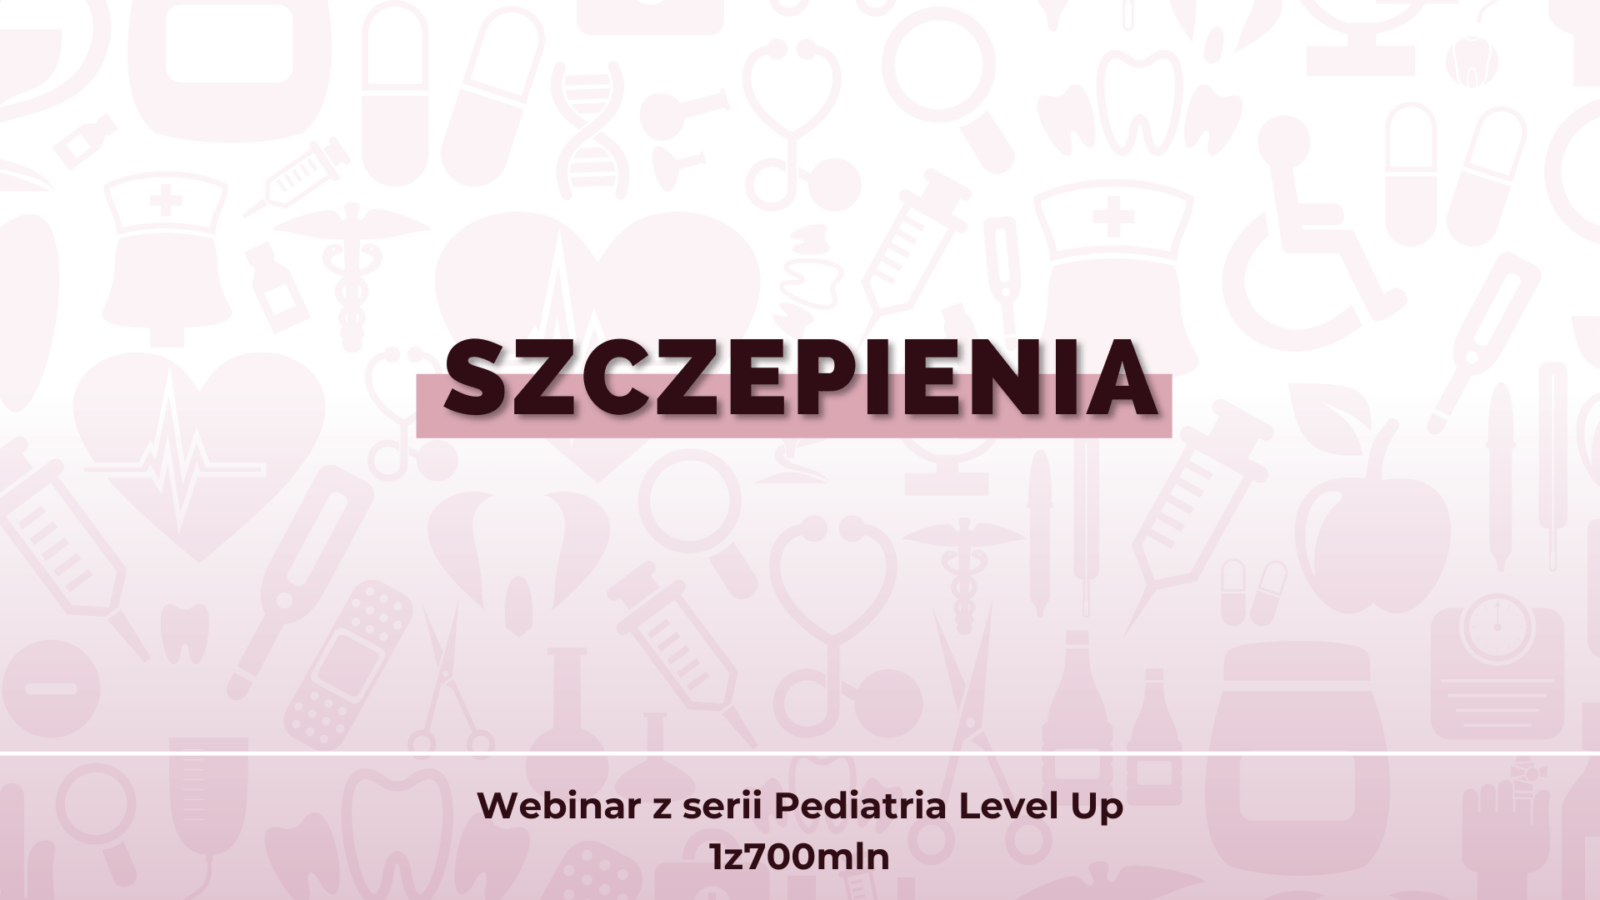 Szczepienia – webinar pediatria Level Up